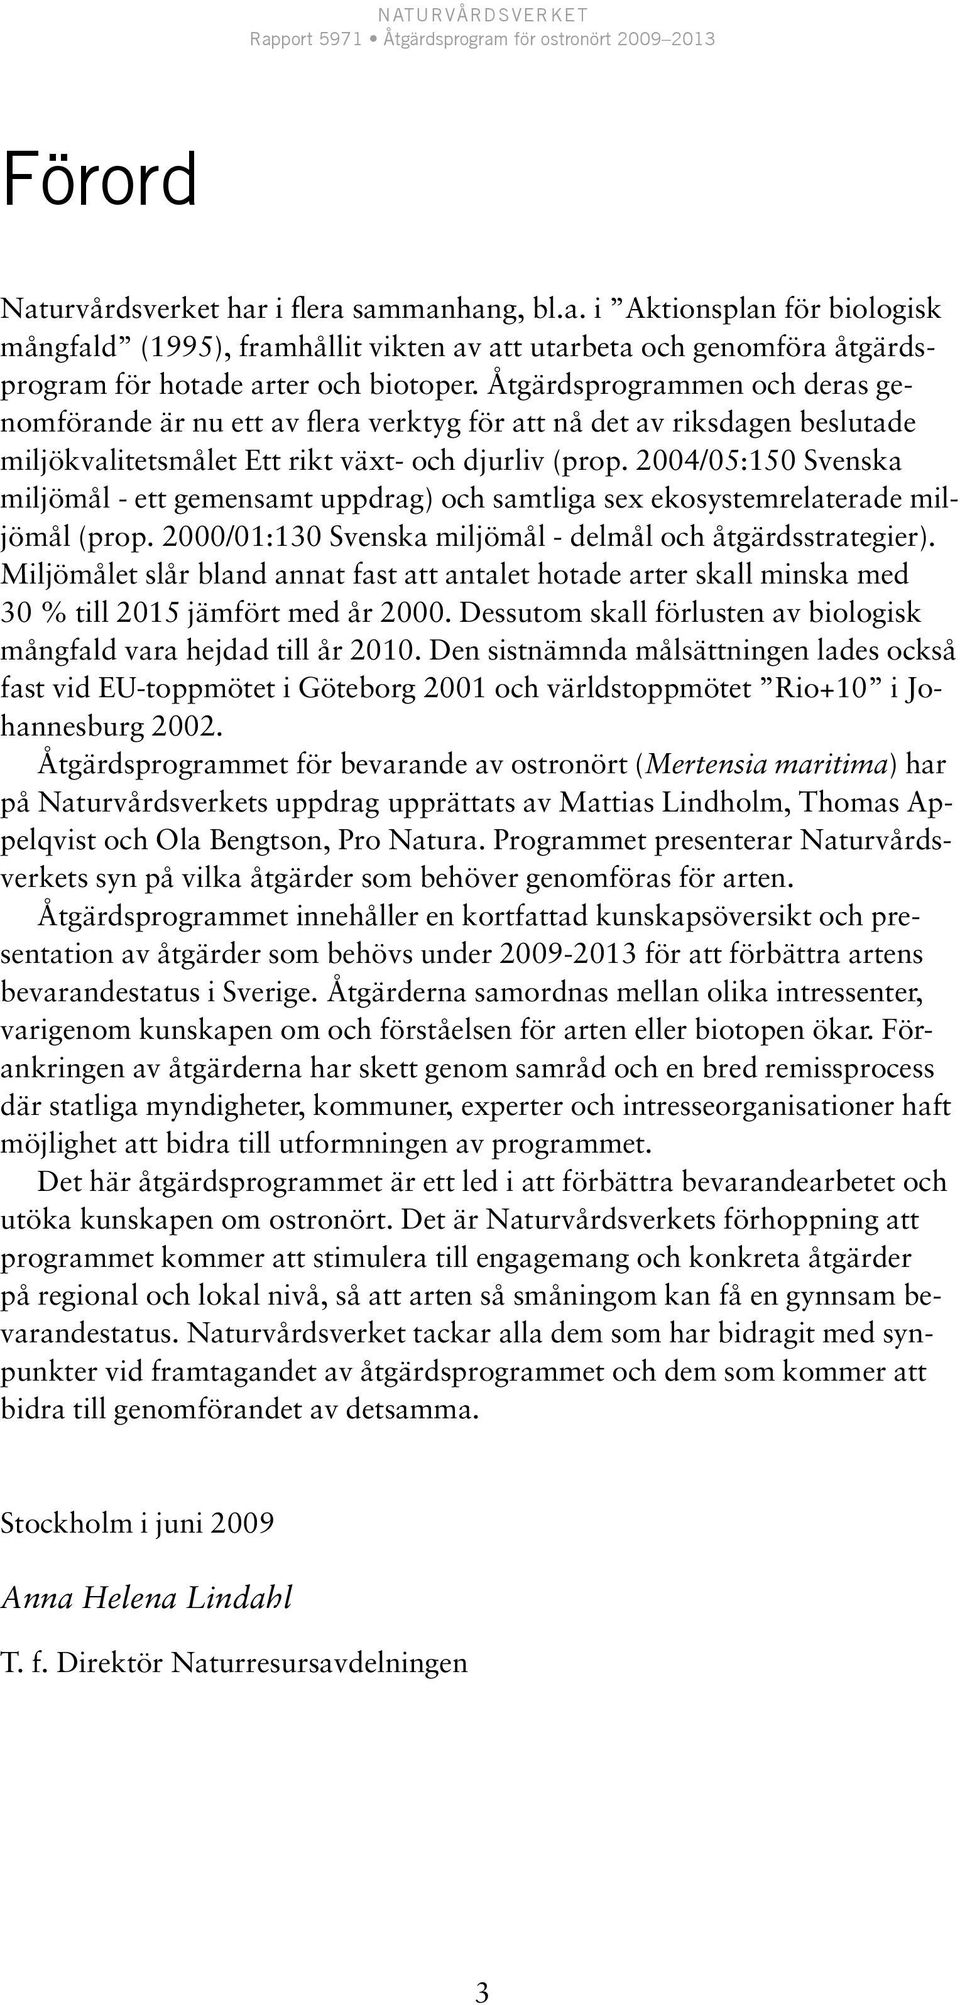 2004/05:150 Svenska miljömål - ett gemensamt uppdrag) och samtliga sex ekosystemrelaterade miljömål (prop. 2000/01:130 Svenska miljömål - delmål och åtgärdsstrategier).